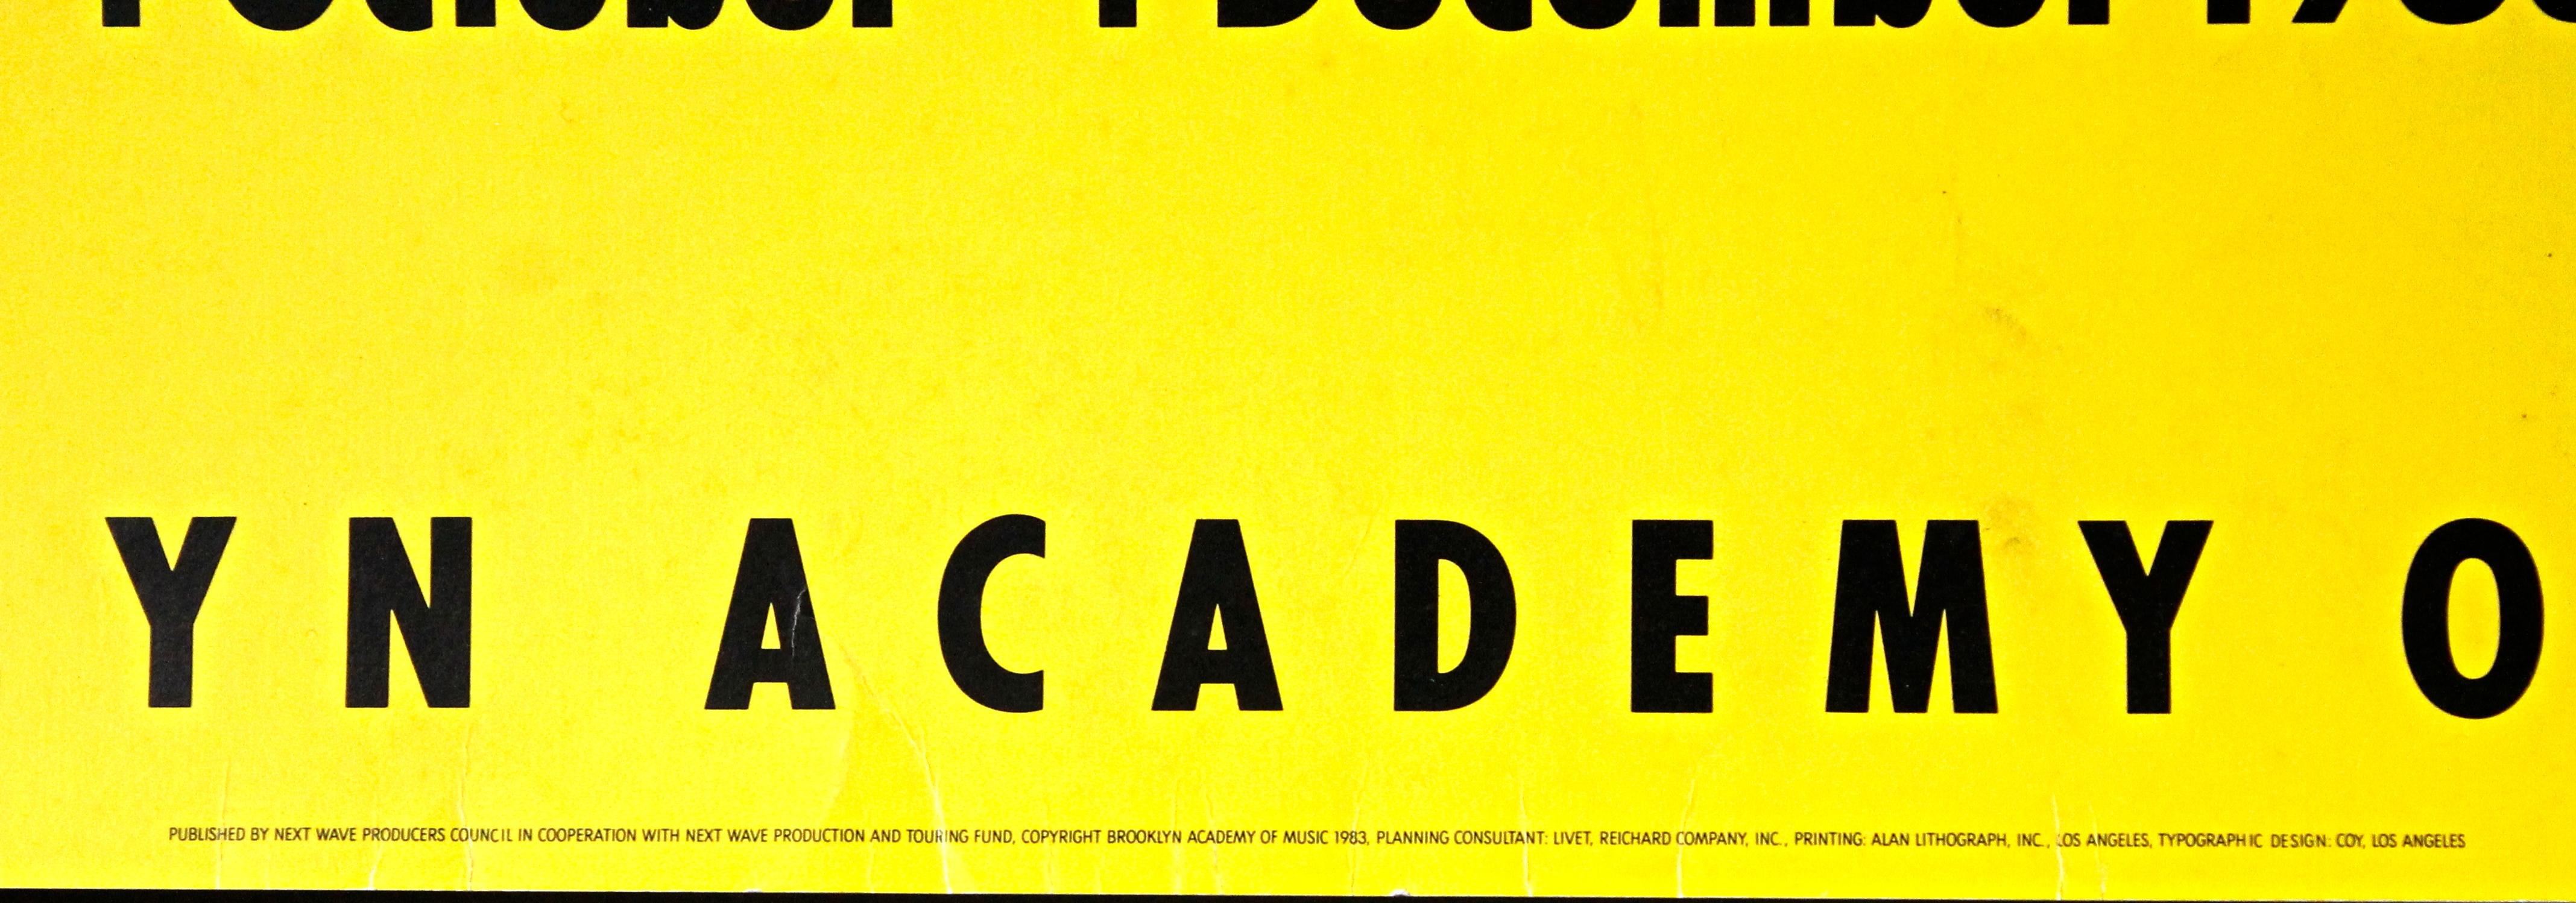 Late 20th Century Roy Lichtenstein Next Wave Festival Brooklyn Academy of Music, 1983